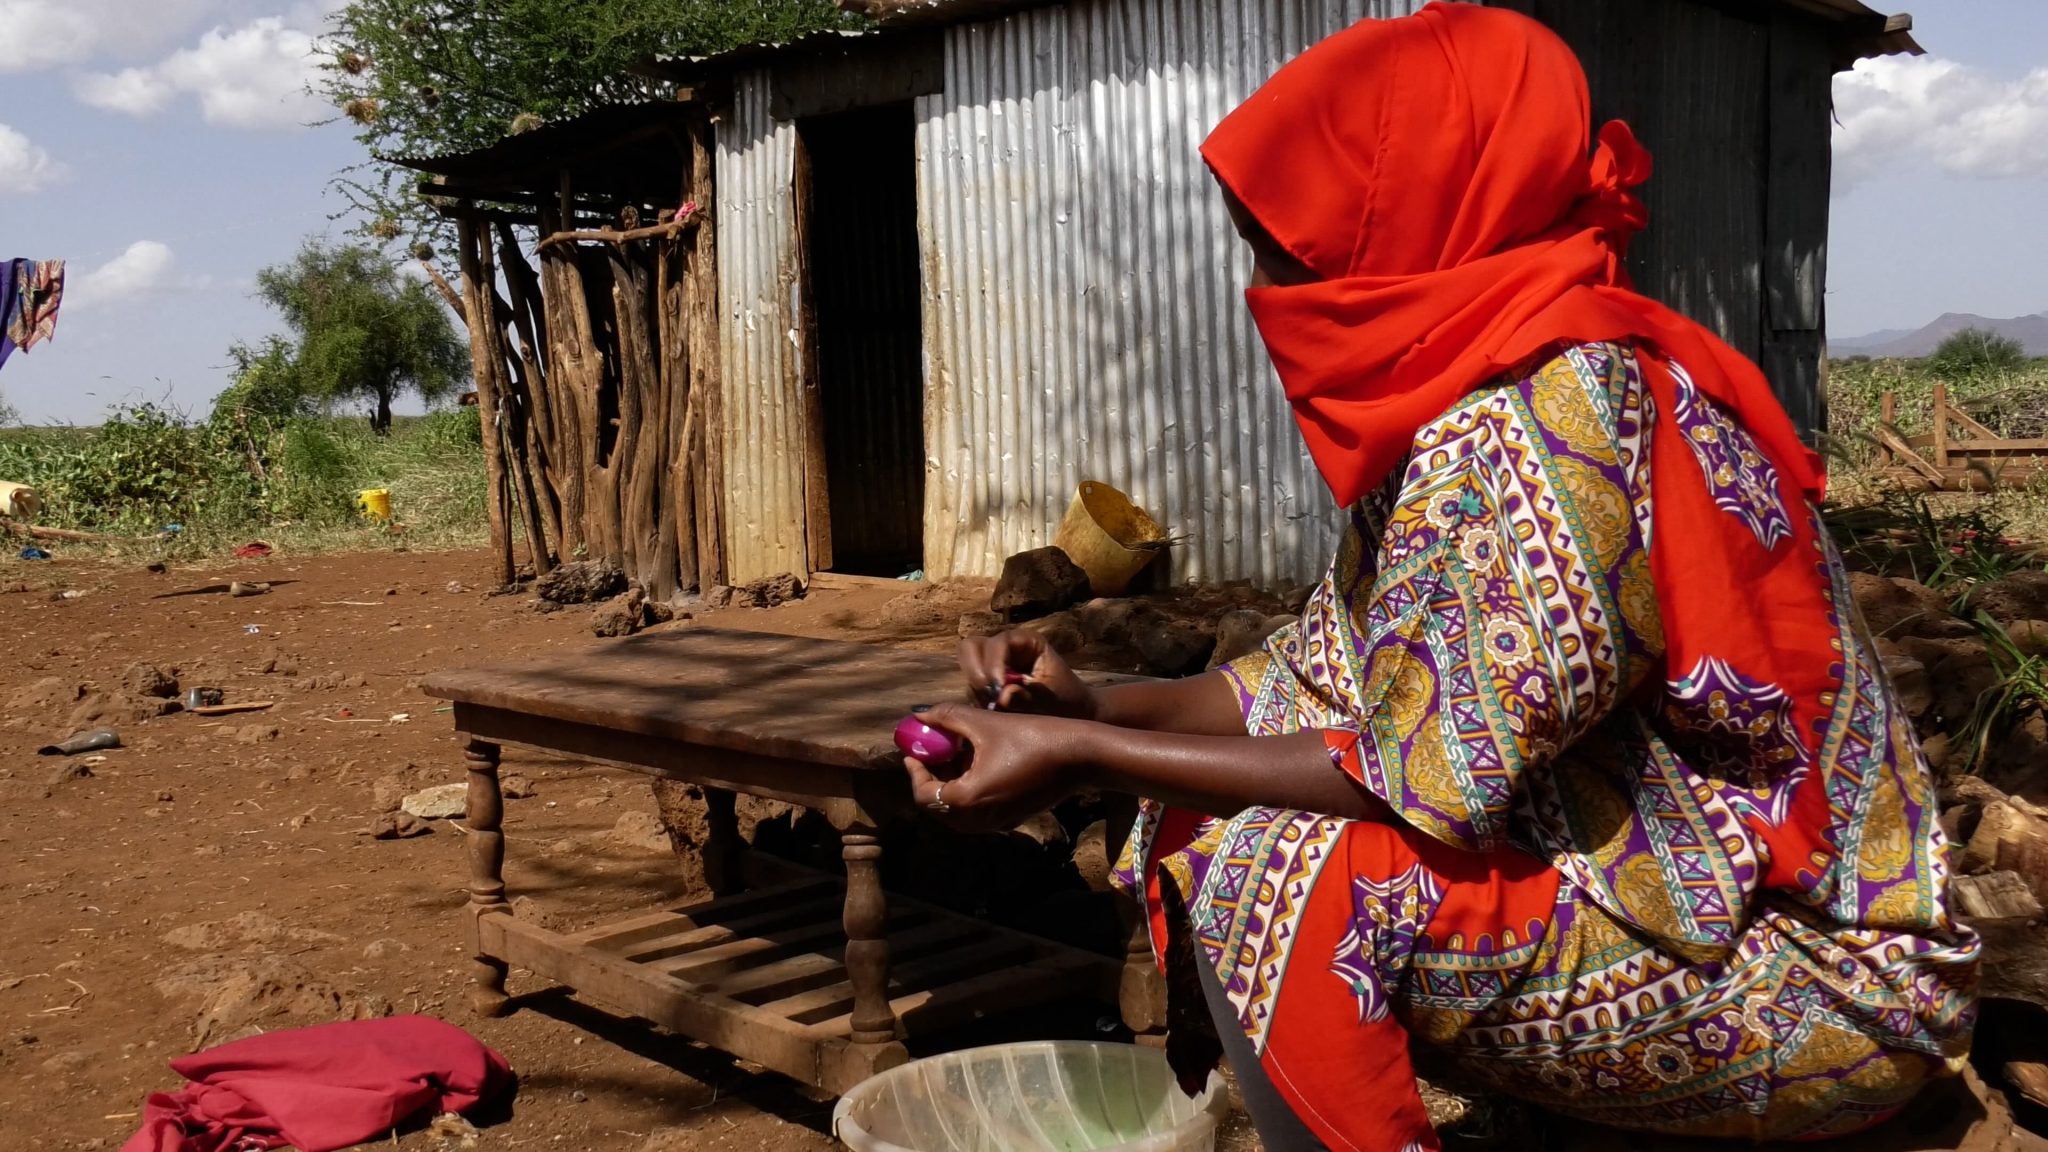 Punaiseen huiviin kietoutunut nainen istuu peltikappaleista kyhätyn rakennuksen edessä pöydän ääressä Itä-Afrikassa.